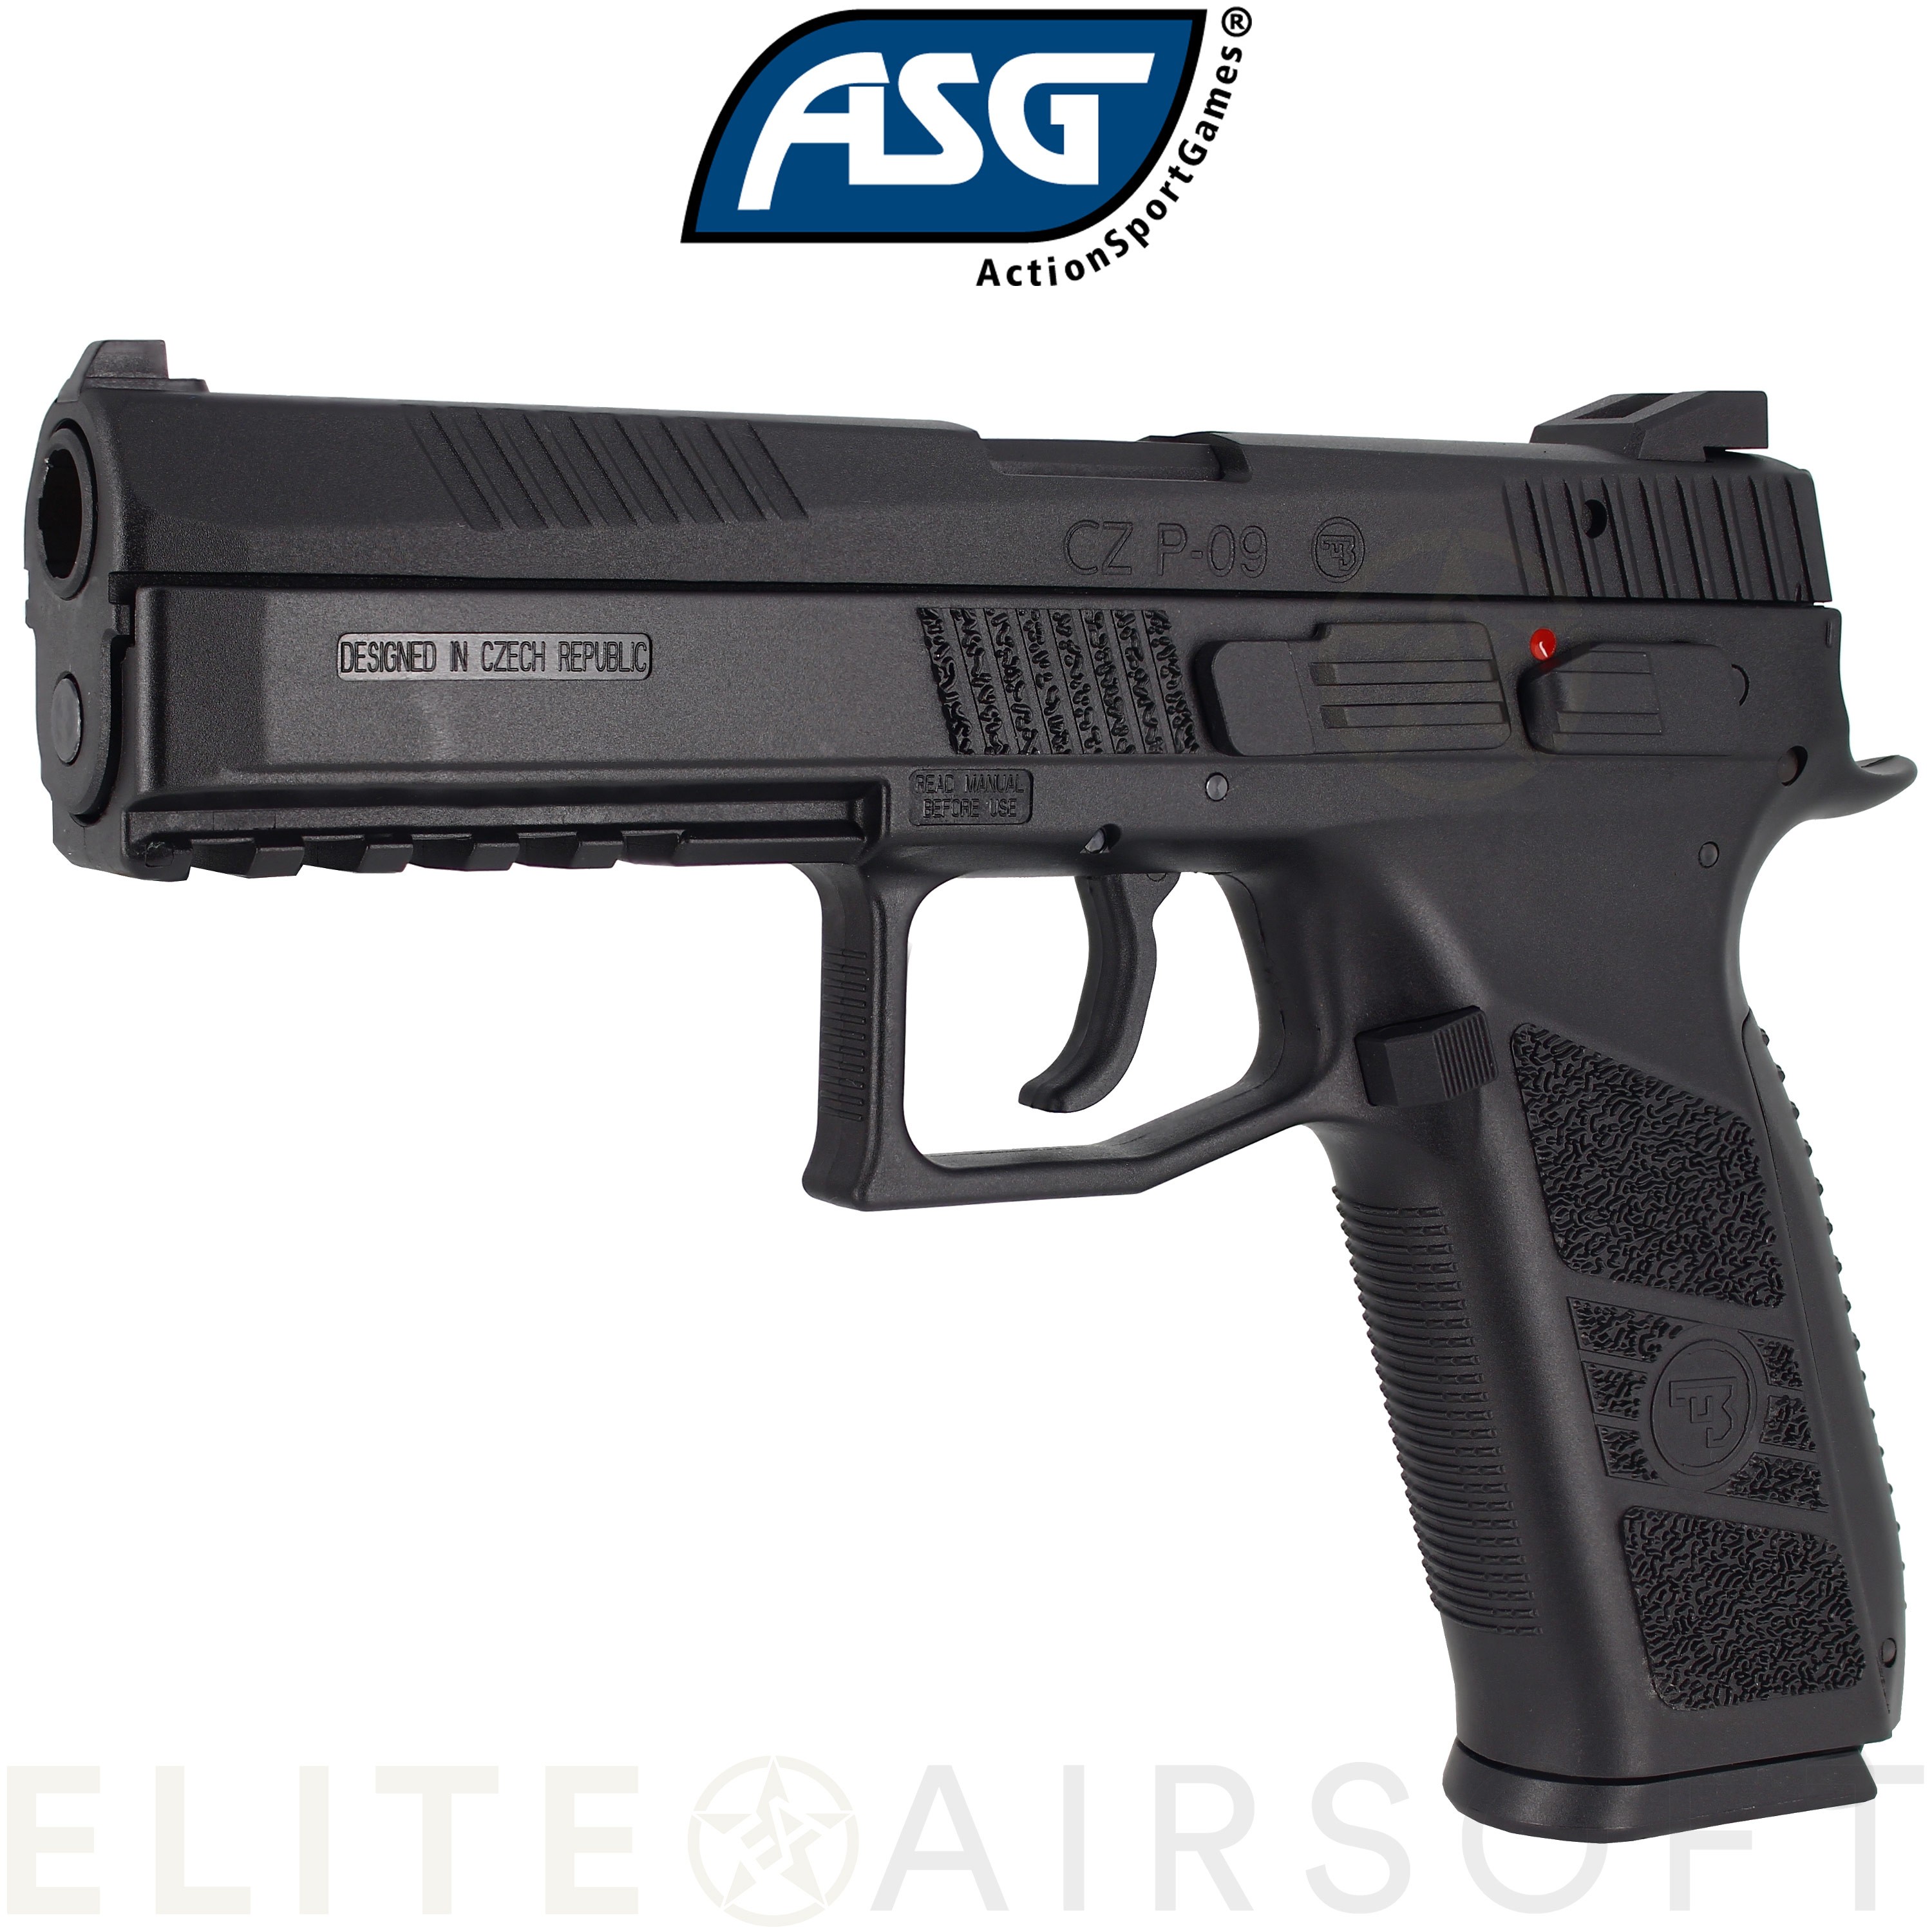 ASG - Pistolet CZ P-09 - GBB - Gaz - Noir (1 joules) - Elite Airsoft